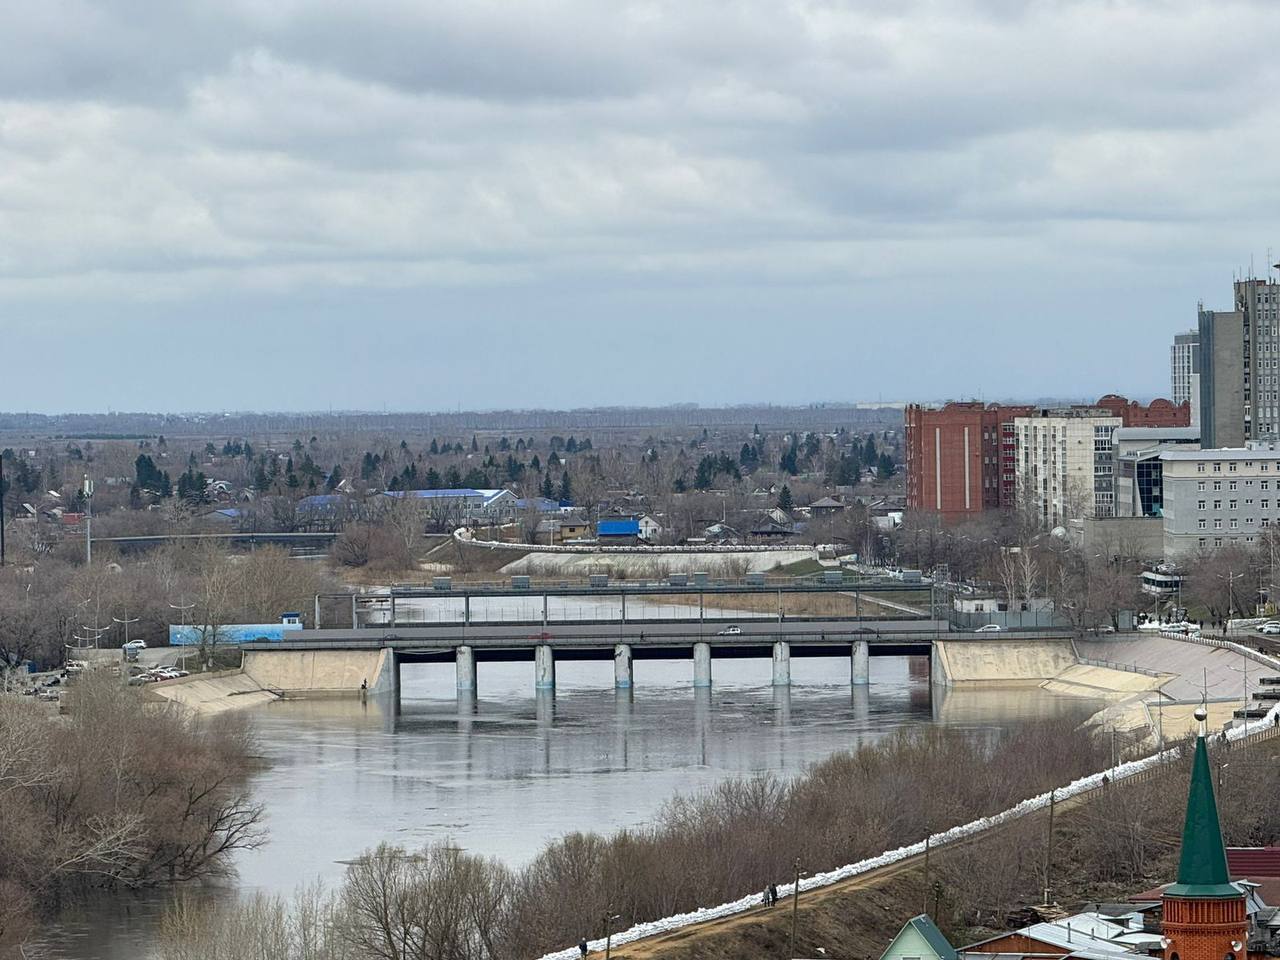 Міста йдуть під воду під звуки сирени: у мережі показали "кару небесну" у Росії. Фото та відео